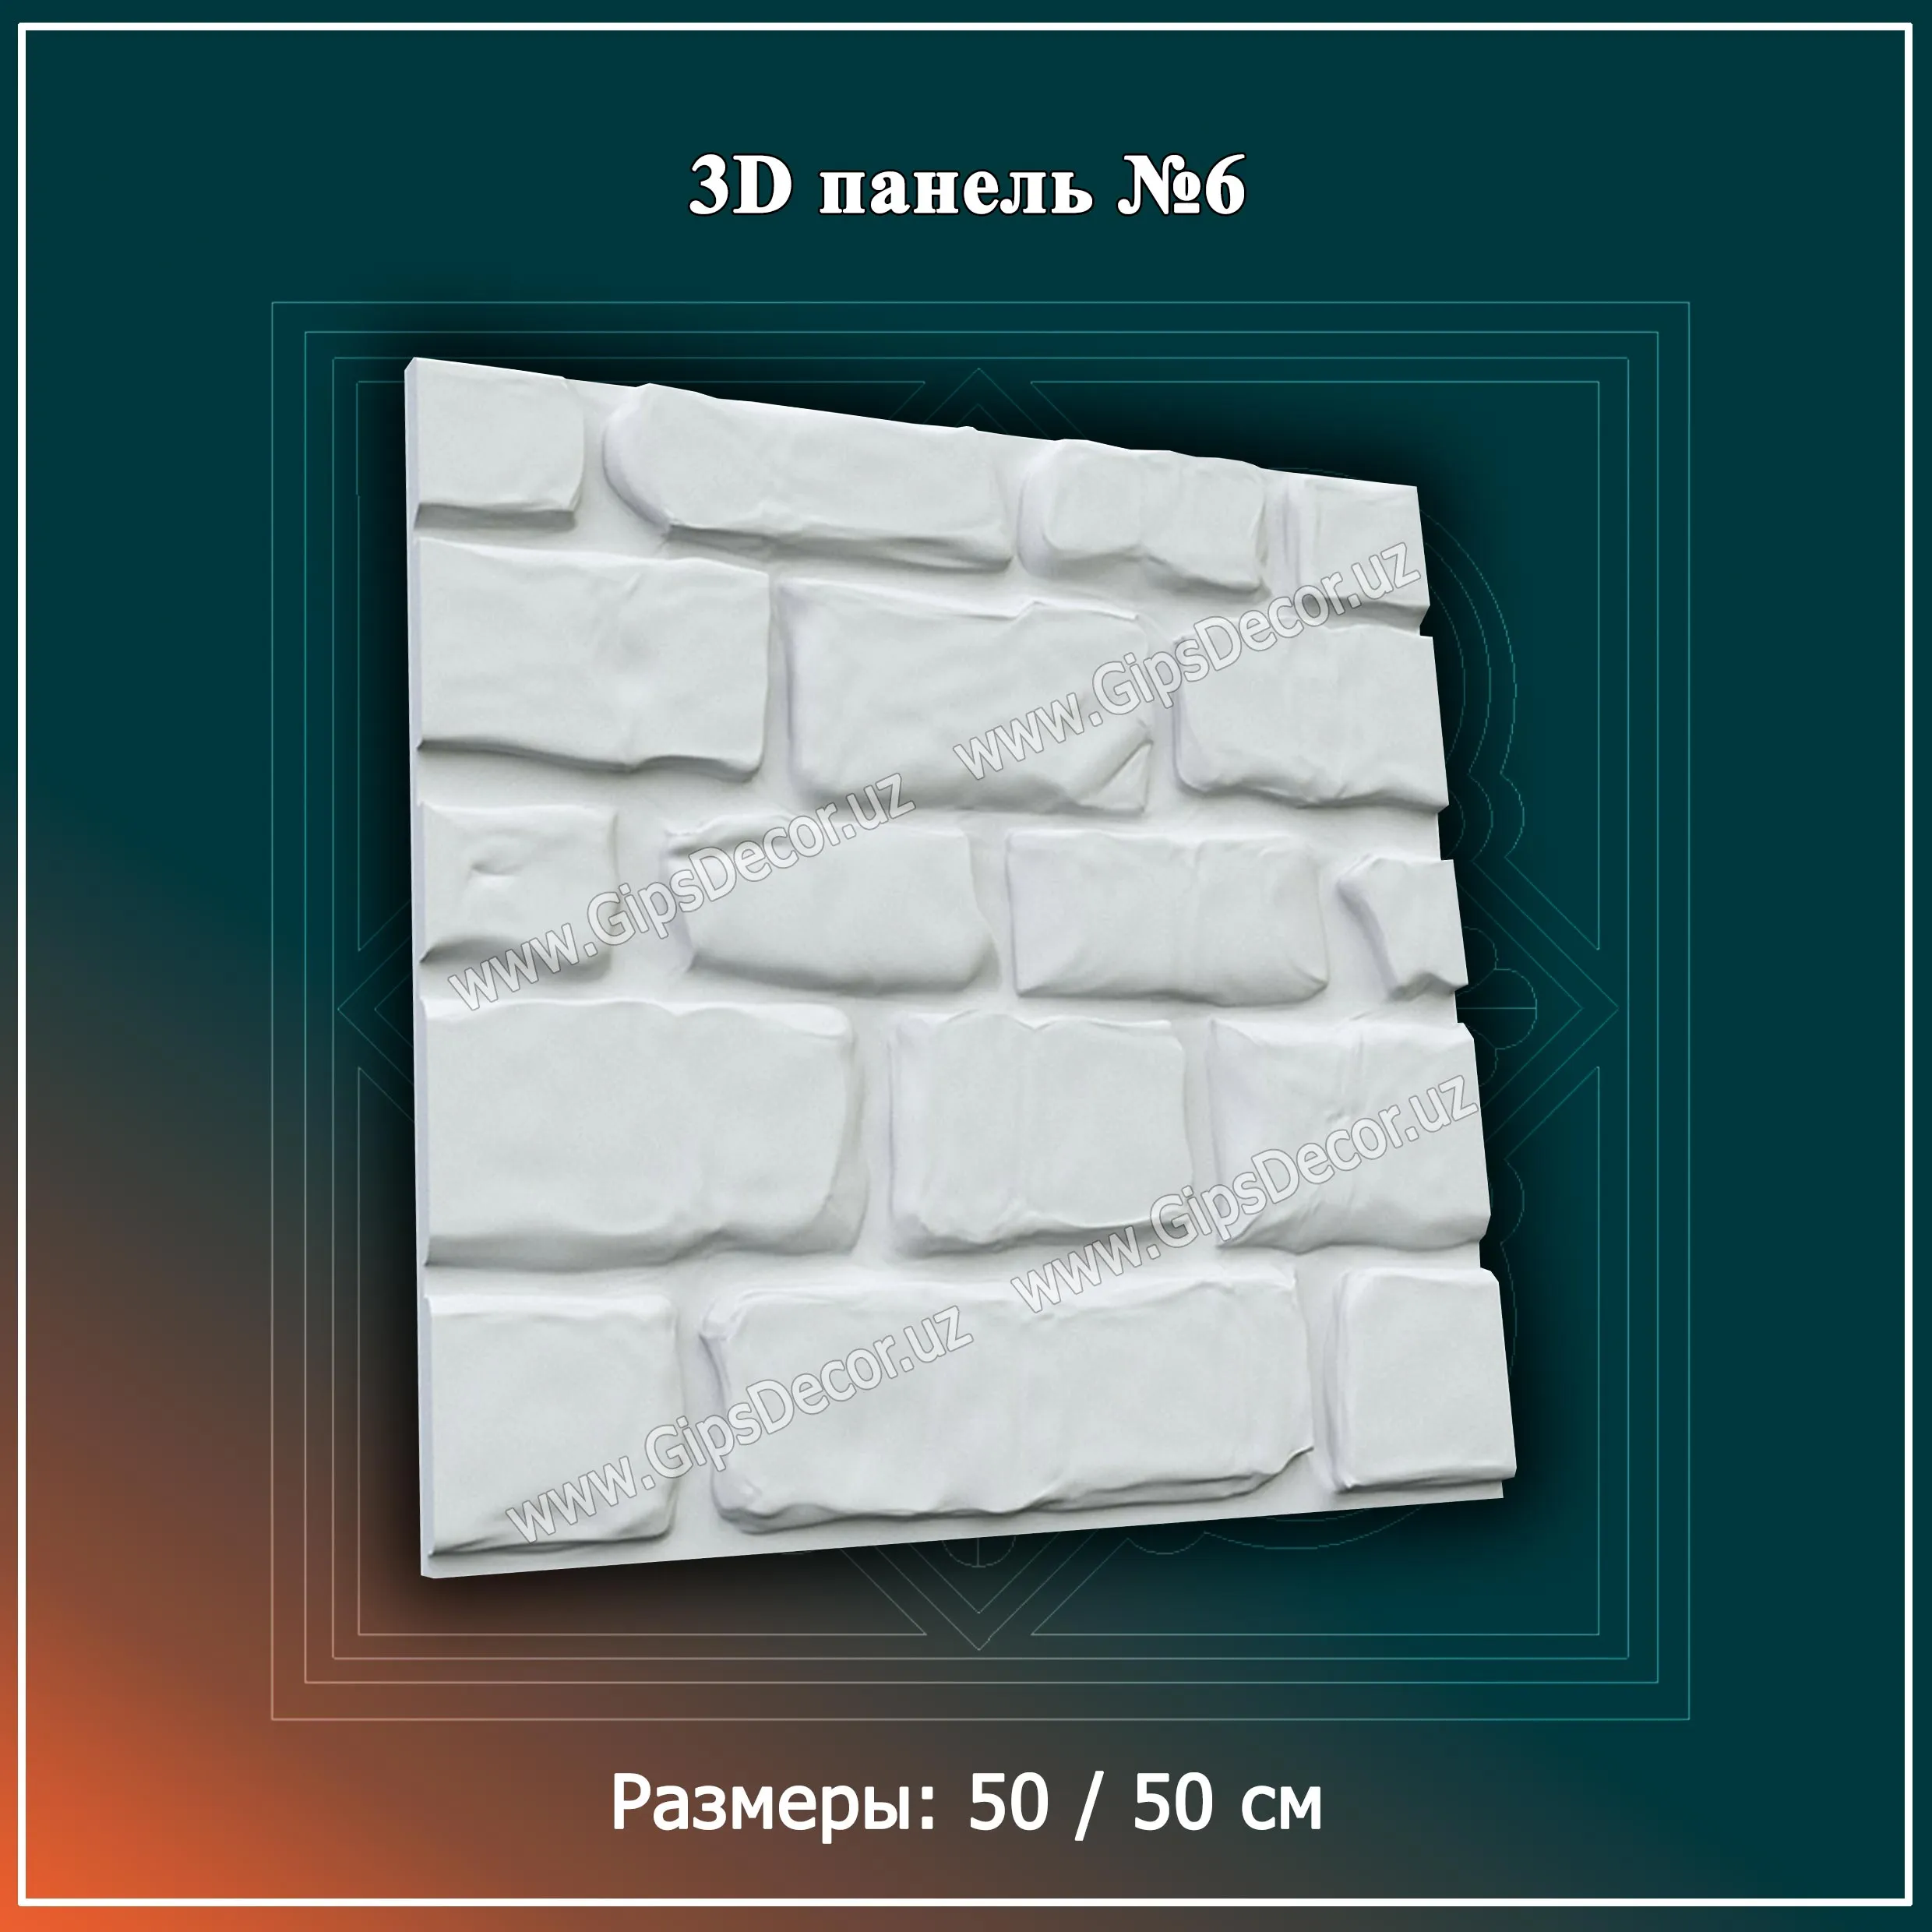 3D Панель №6 Размеры: 50 / 50 см#1